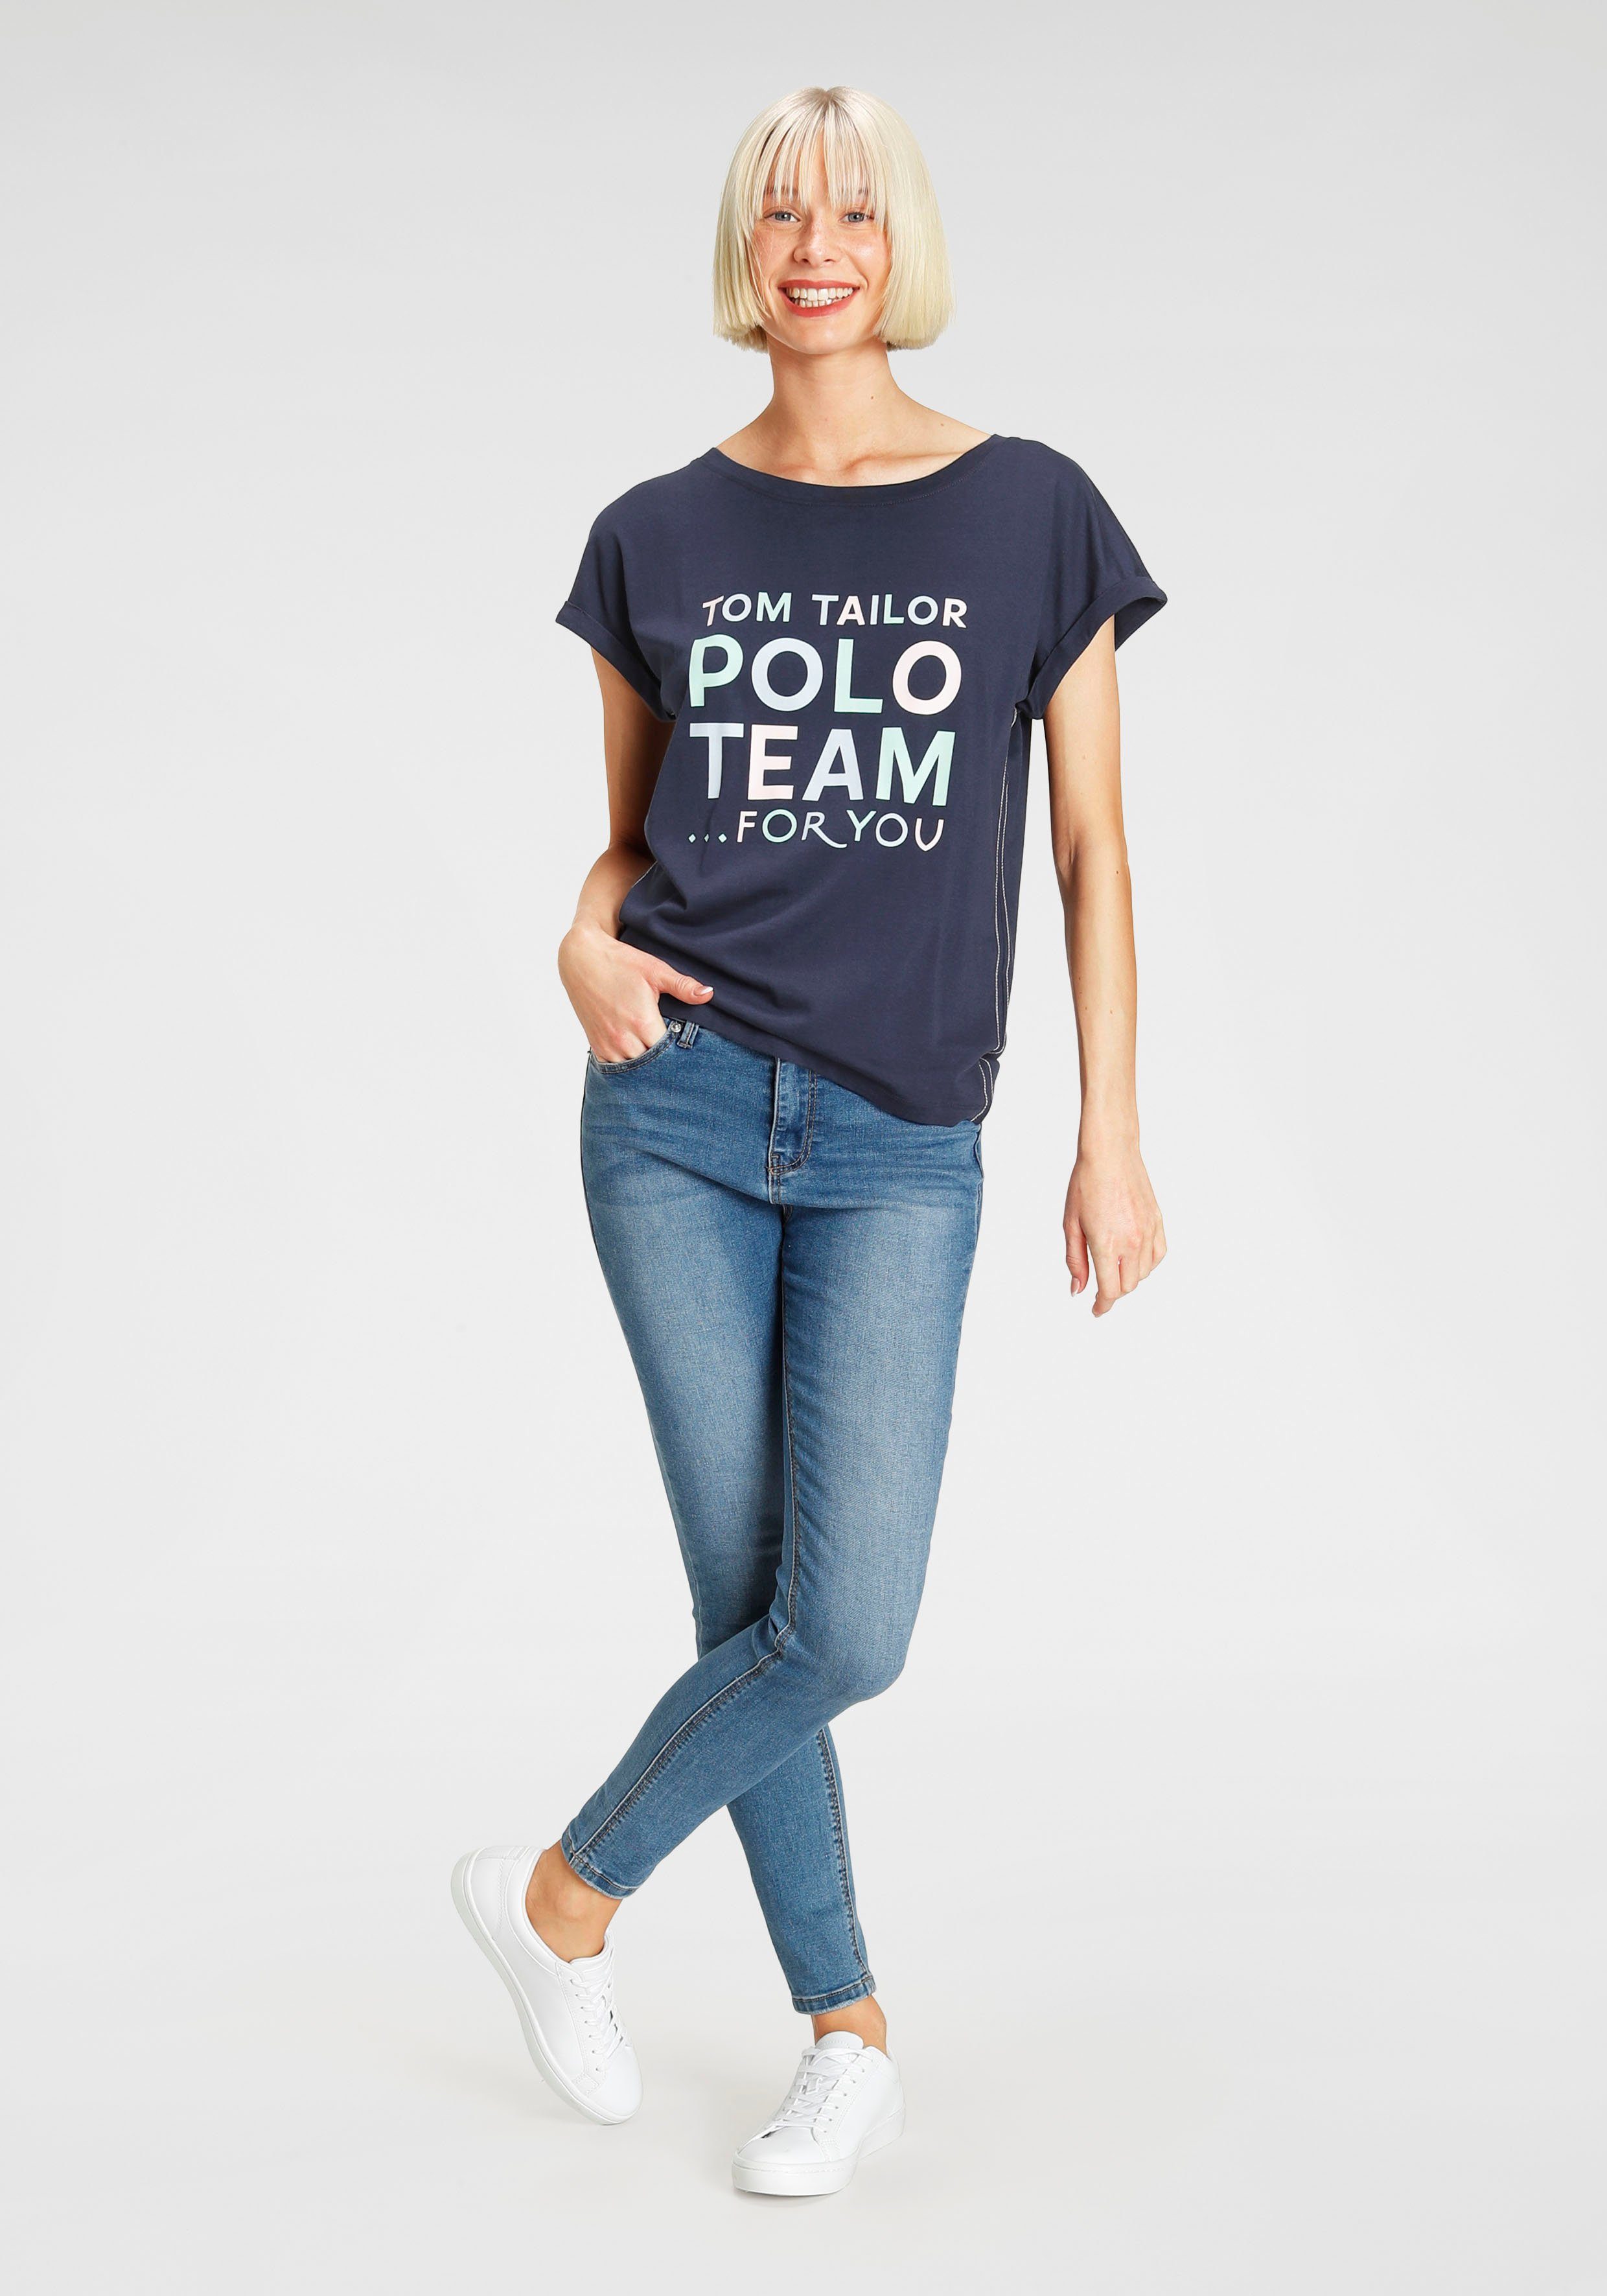 TOM TAILOR Polo Team großem Print-Shirt Logo-Print farbenfrohen